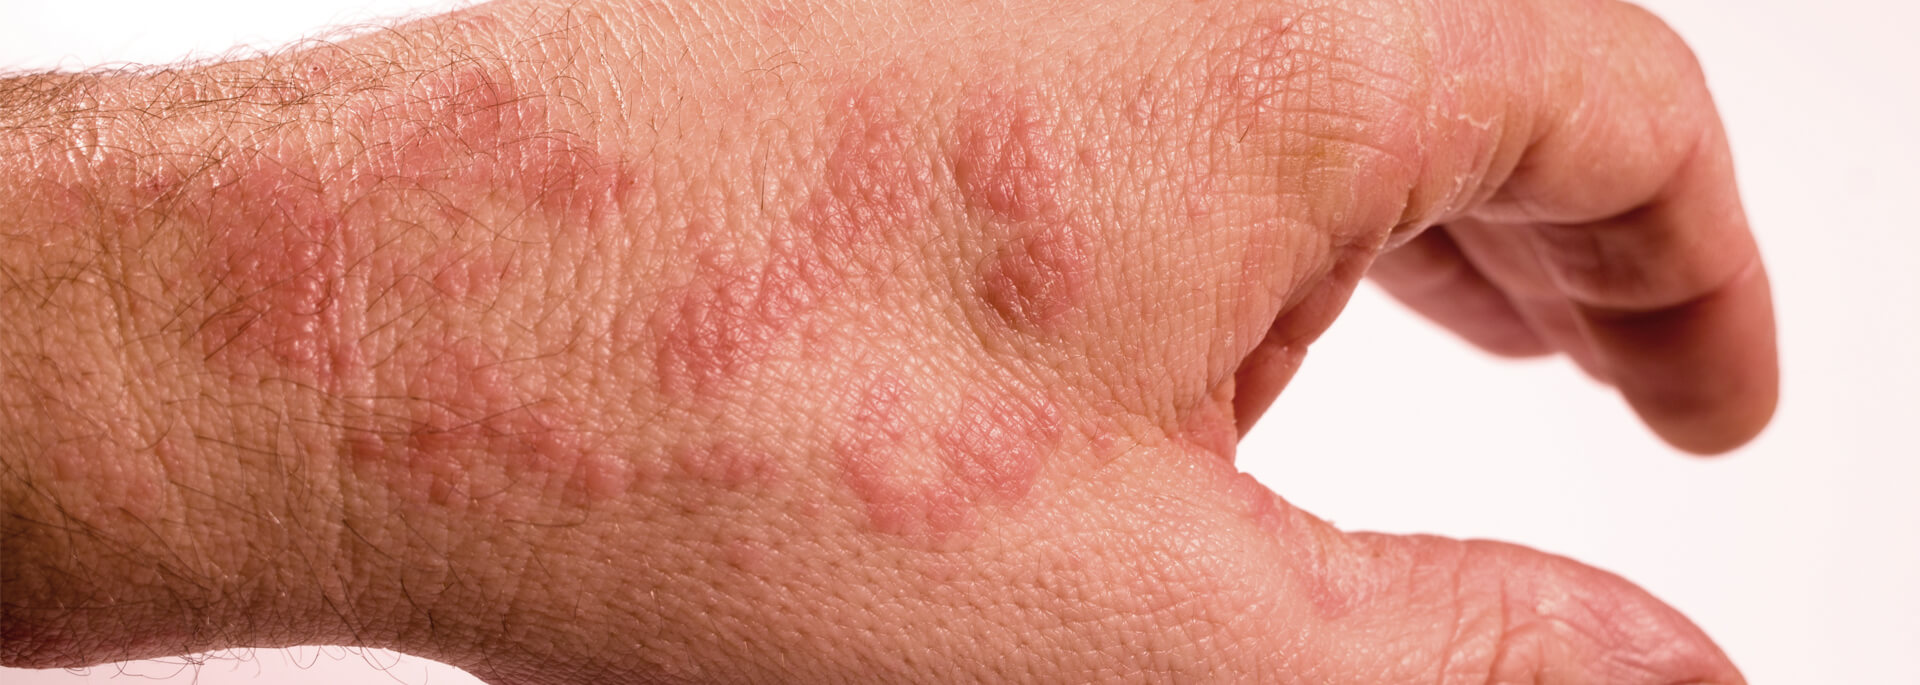 Rękawiczki jednorazowe dla alergików - jakie wybrać?